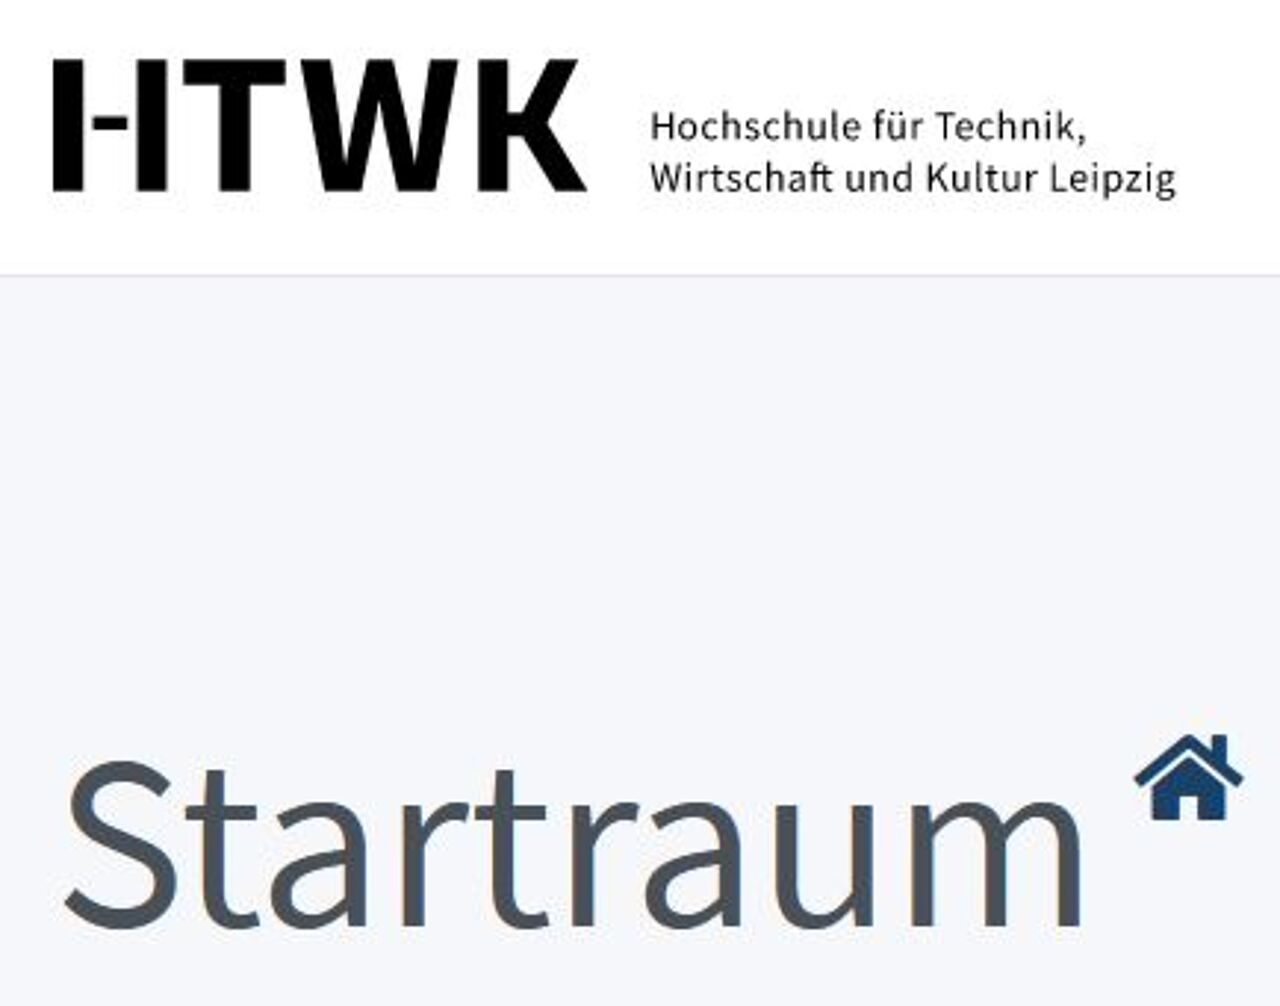 HTWK-Schriftzug mit dem Wort "Startraum" darunter und einem "Haus"-Icon daneben"